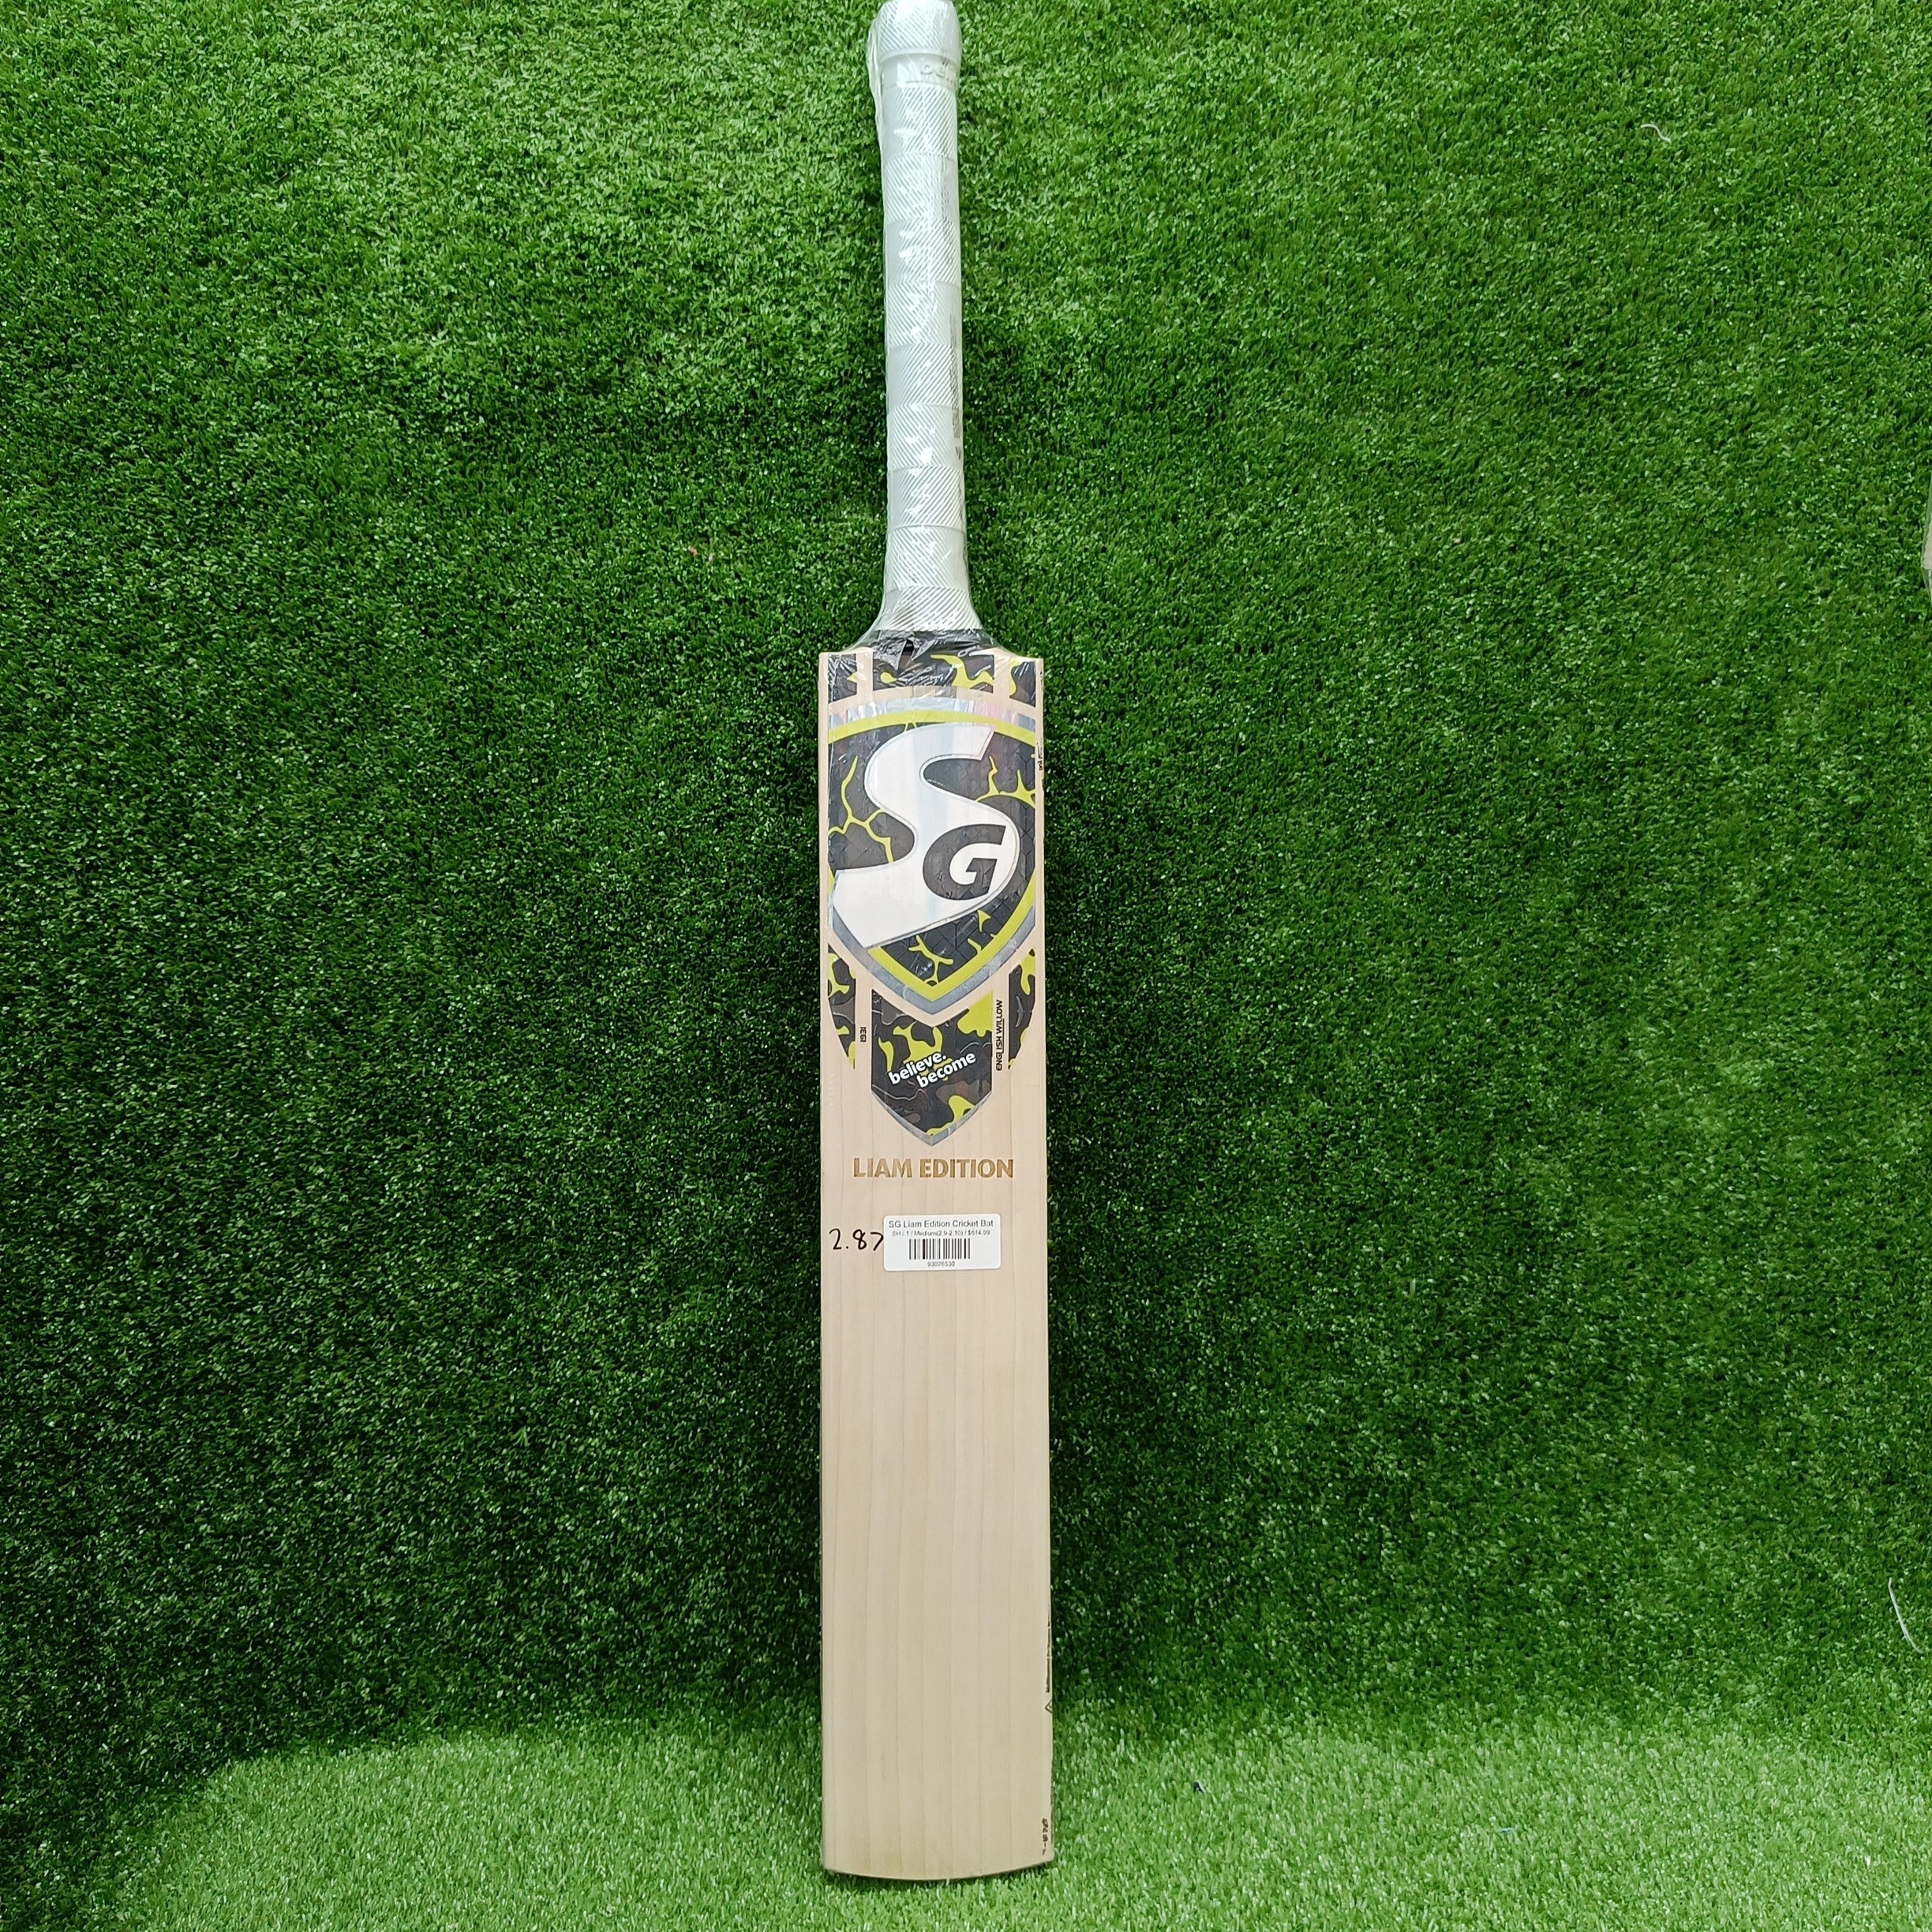 SG Liam Edition Cricket Bat